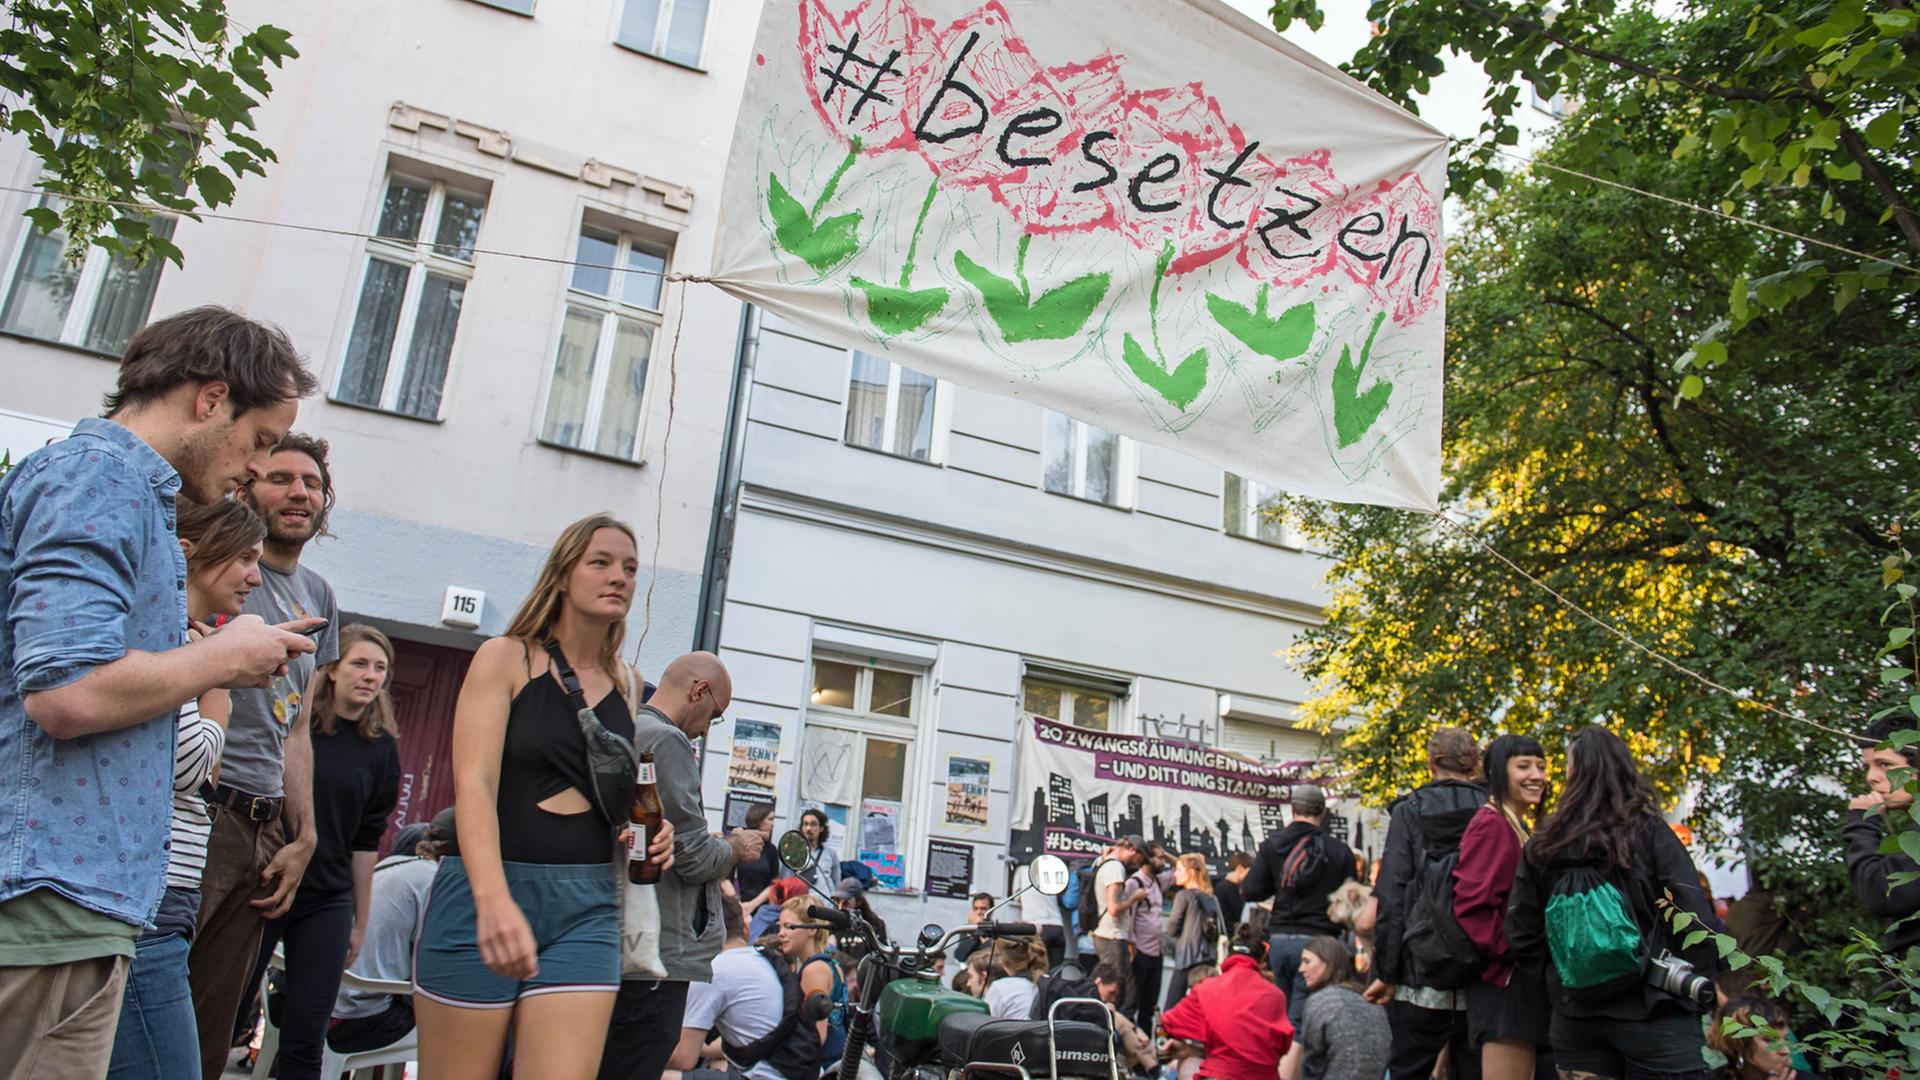 Am Pfingstsonntag wurden in Berlin Häuser besetzt. Mit der Aktion wollten die Besetzer ein Zeichen gegen Verdrängung und Wohnungsnot setzen.